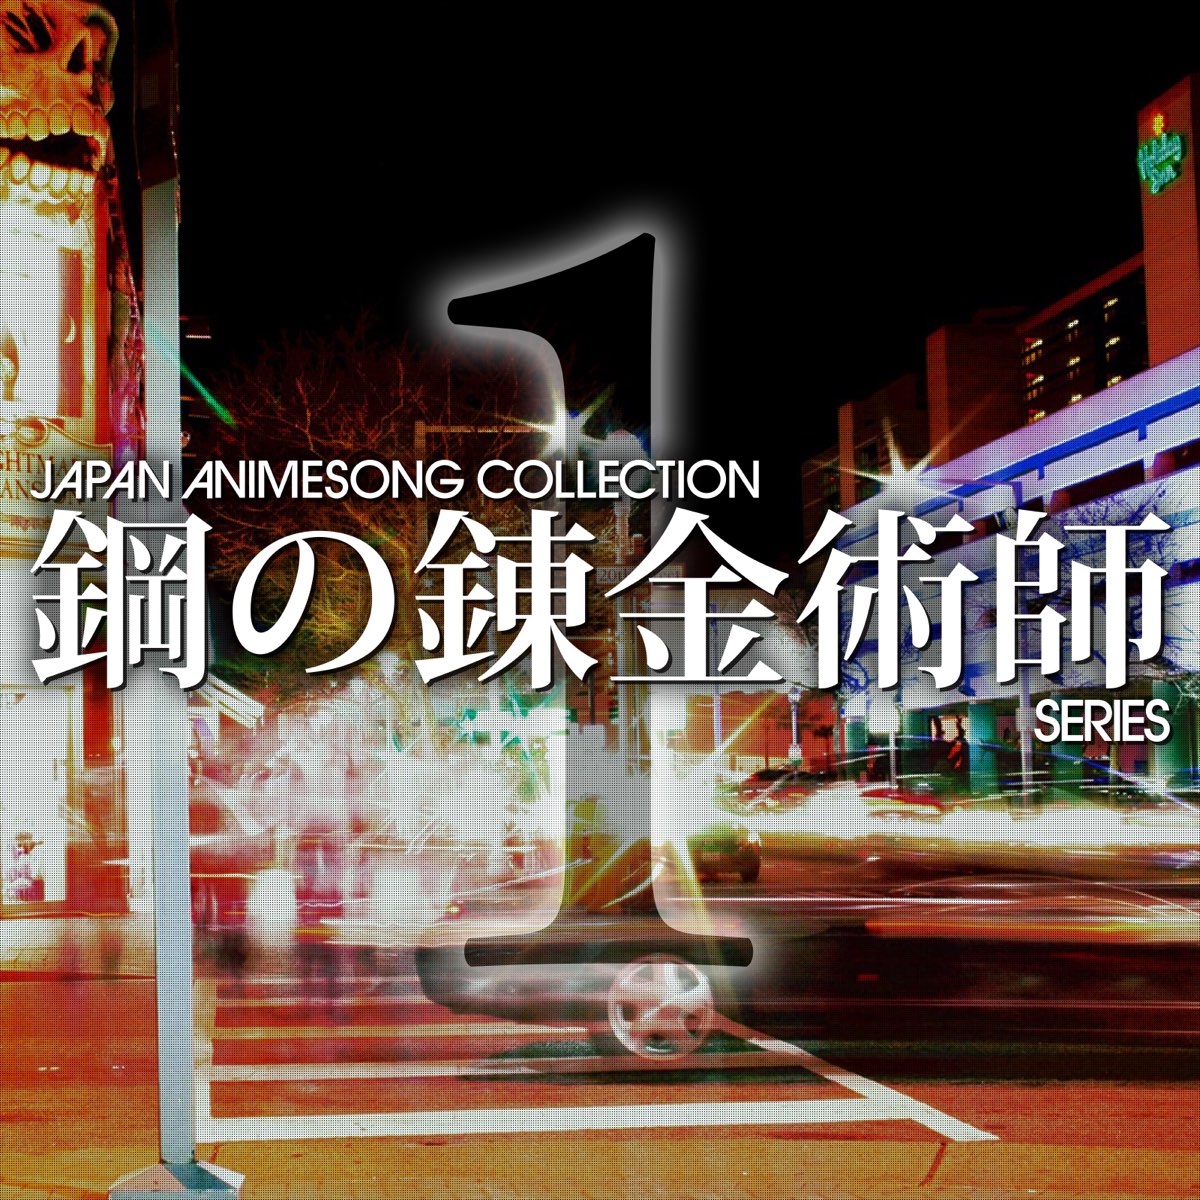 Various Artistsの Japan Animesong Collection 鋼の錬金術師シリーズ Vol 1 をapple Musicで